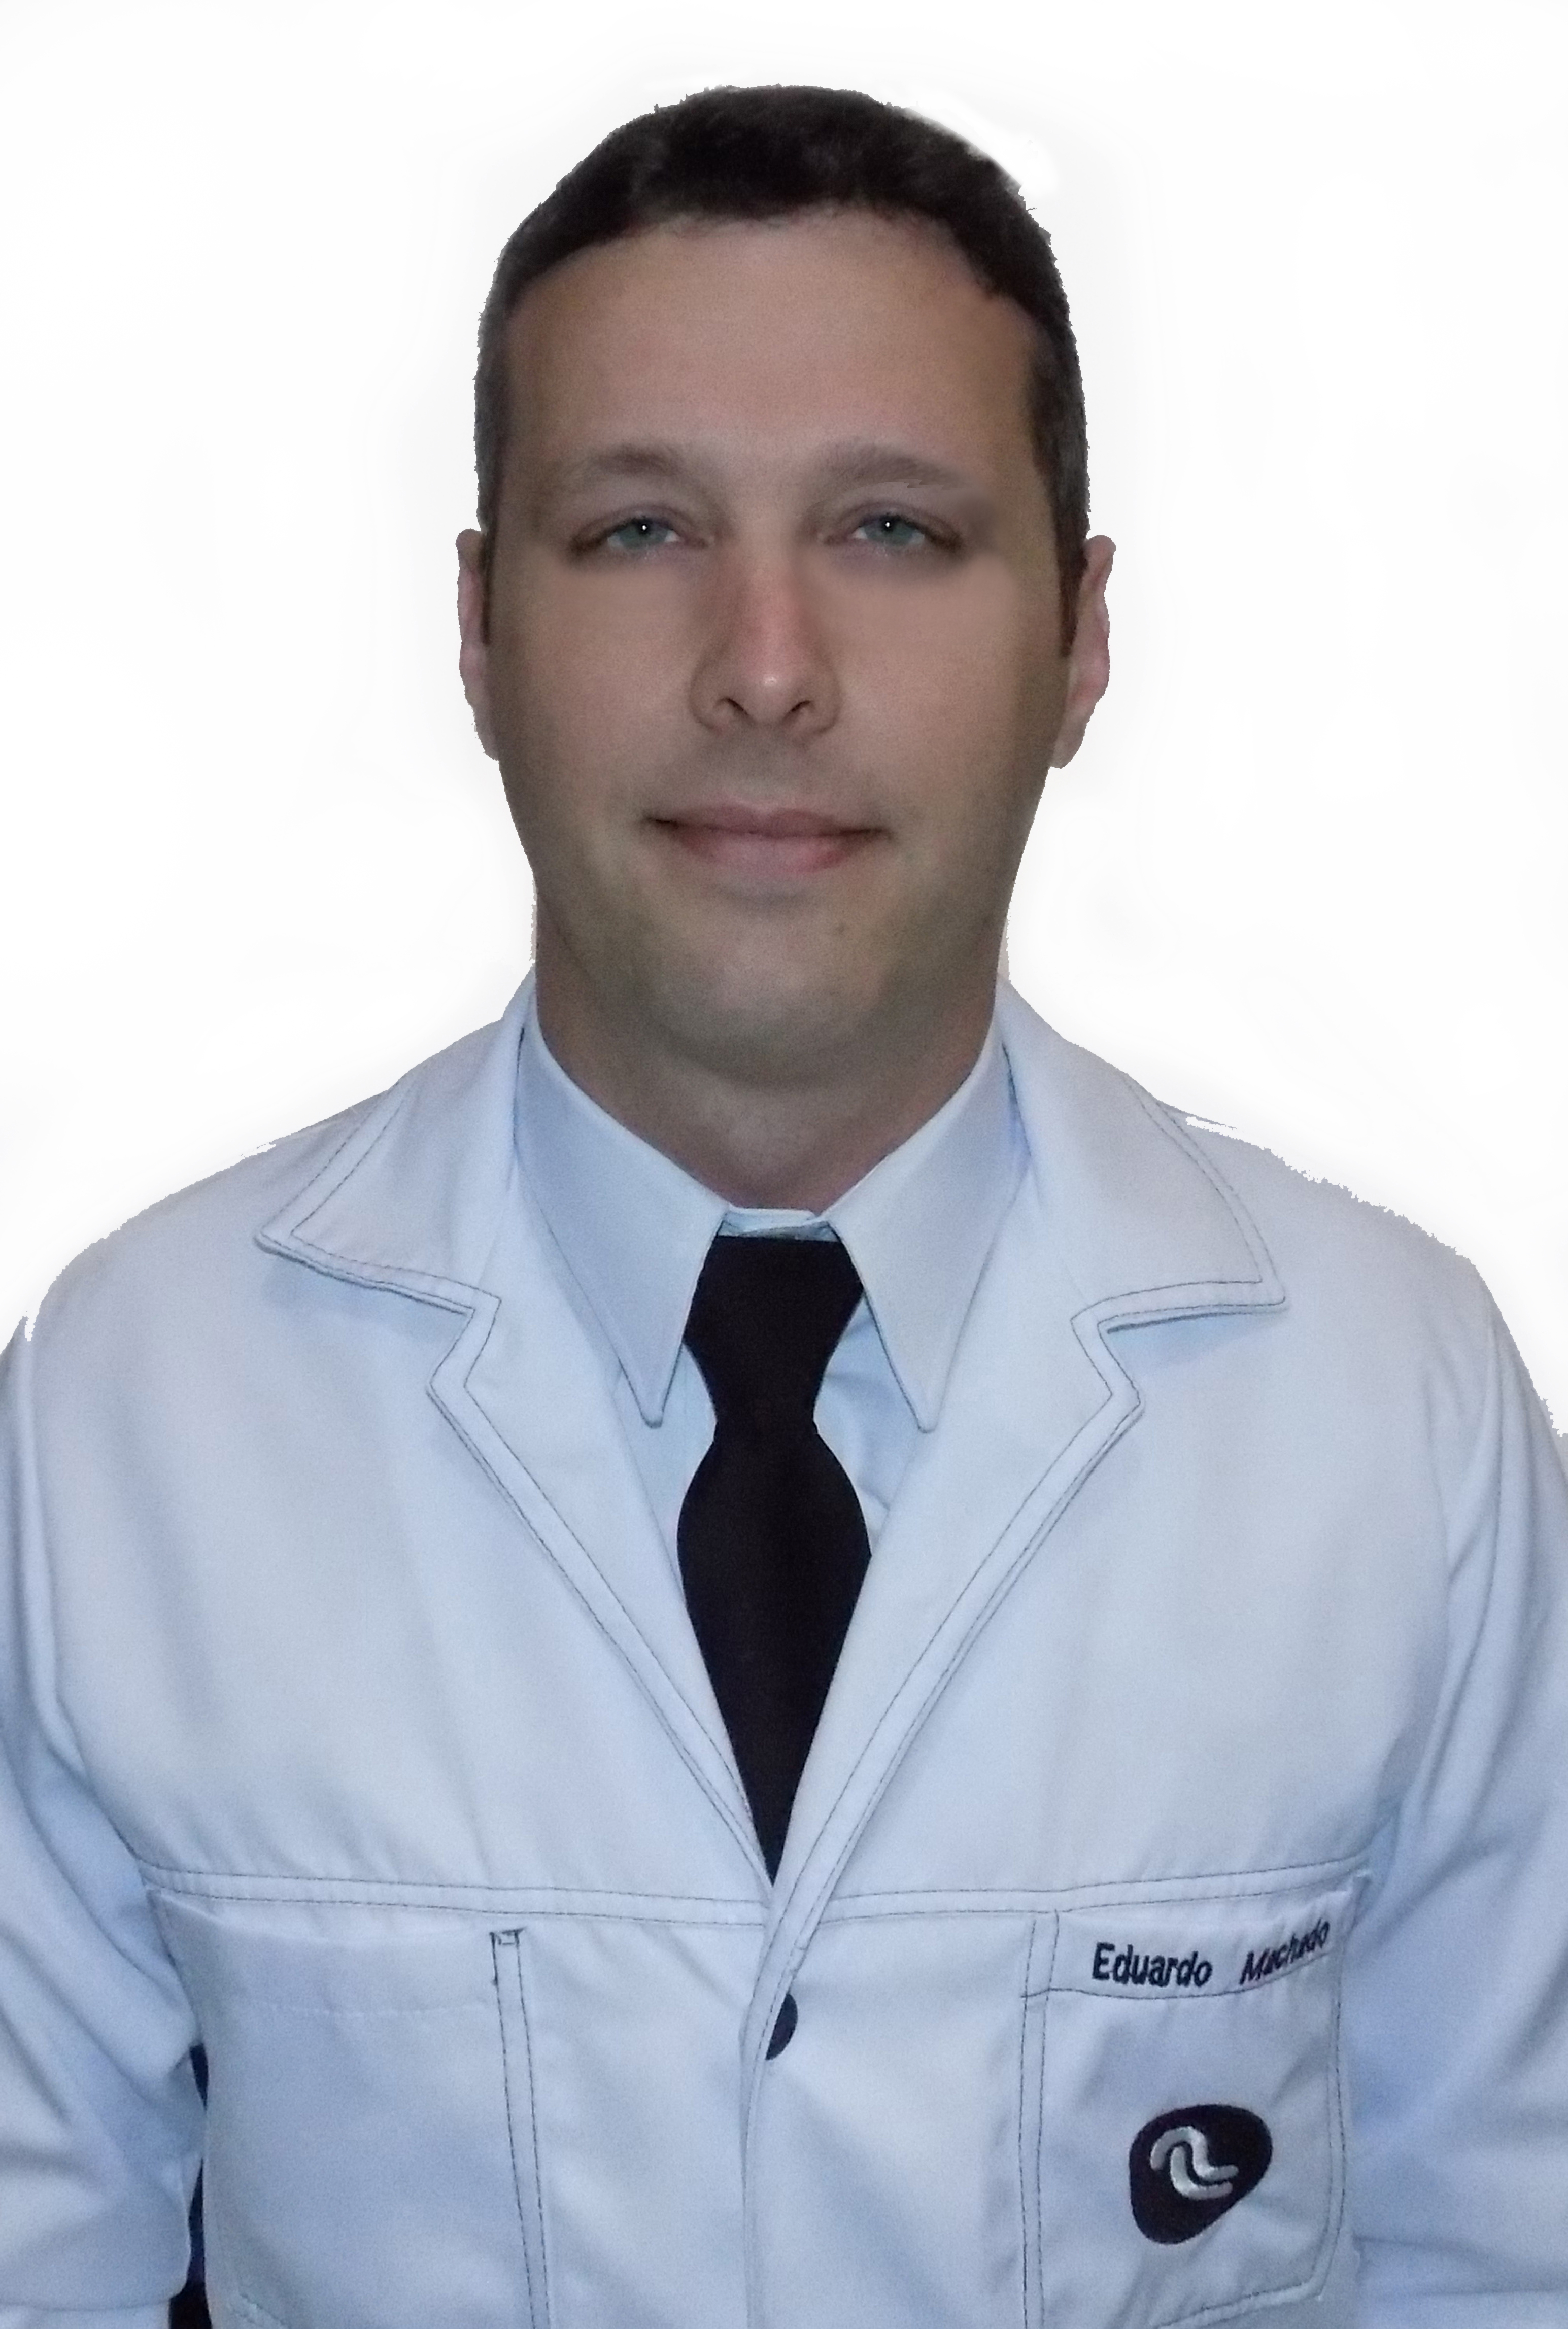 Dr. Eduardo Machado